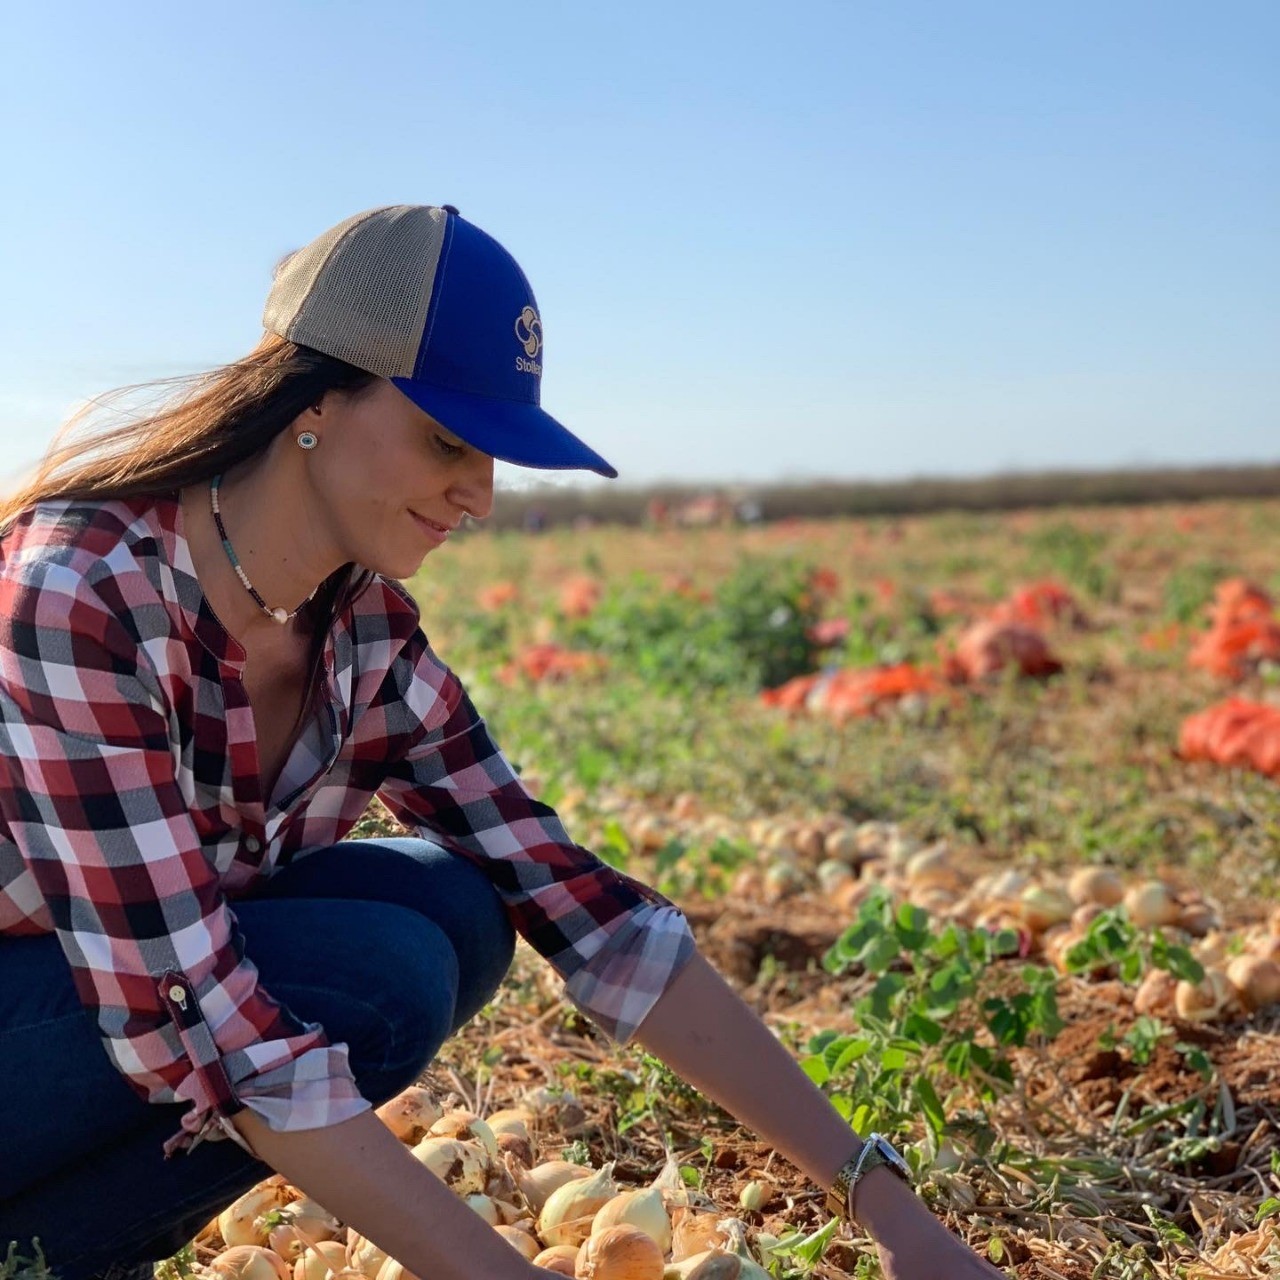 Vanessa Sabioni, engenheira agrônoma e mestre em fitopatologia pela Universidade Federal de Viçosa (UFV); Na foto, ela veste camisa xadrez, calça jeans, boné azul e está colhendo cebolas (Foto:  )